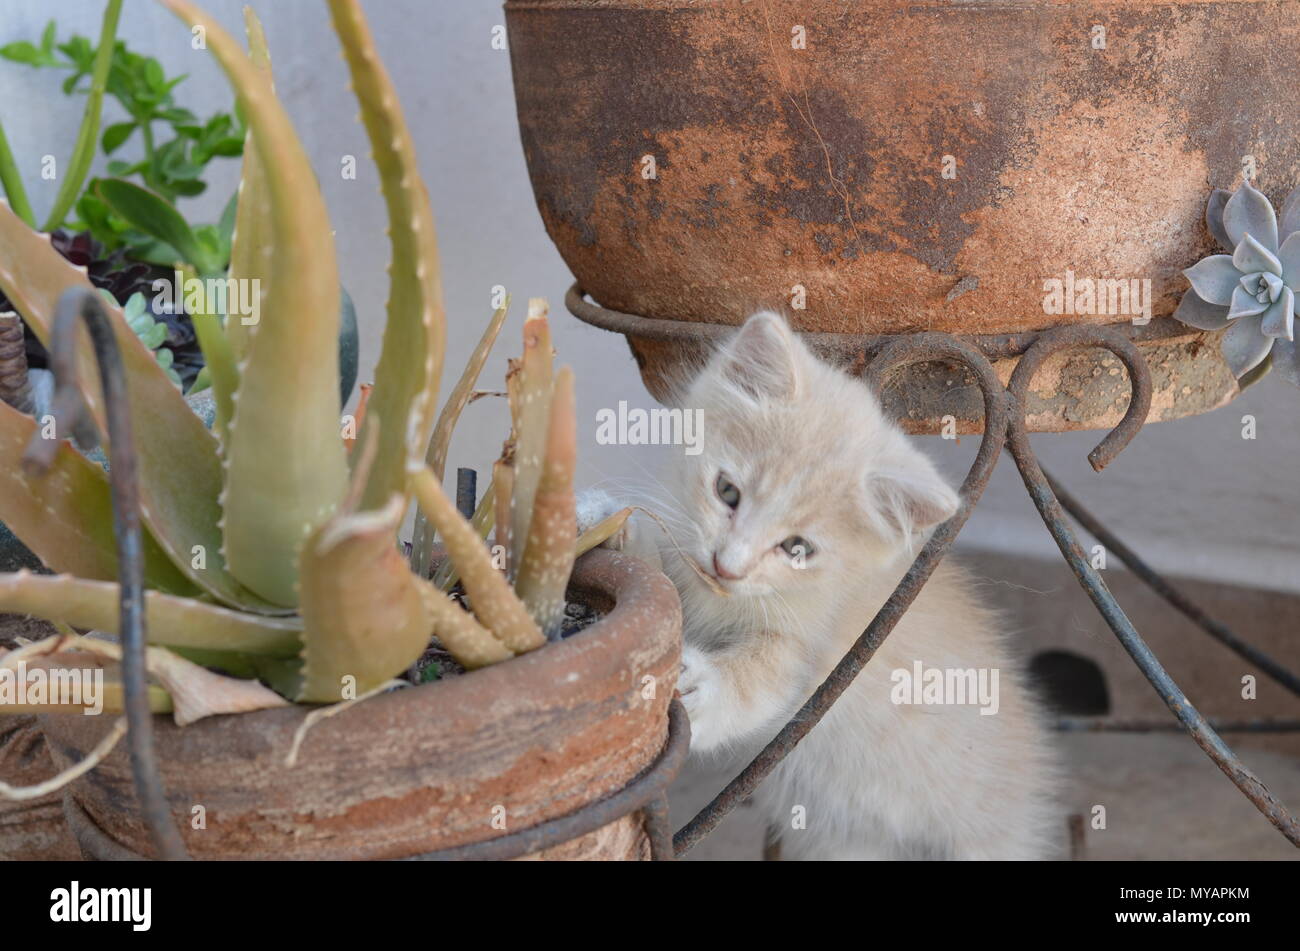 Mischievous kitten Stock Photo